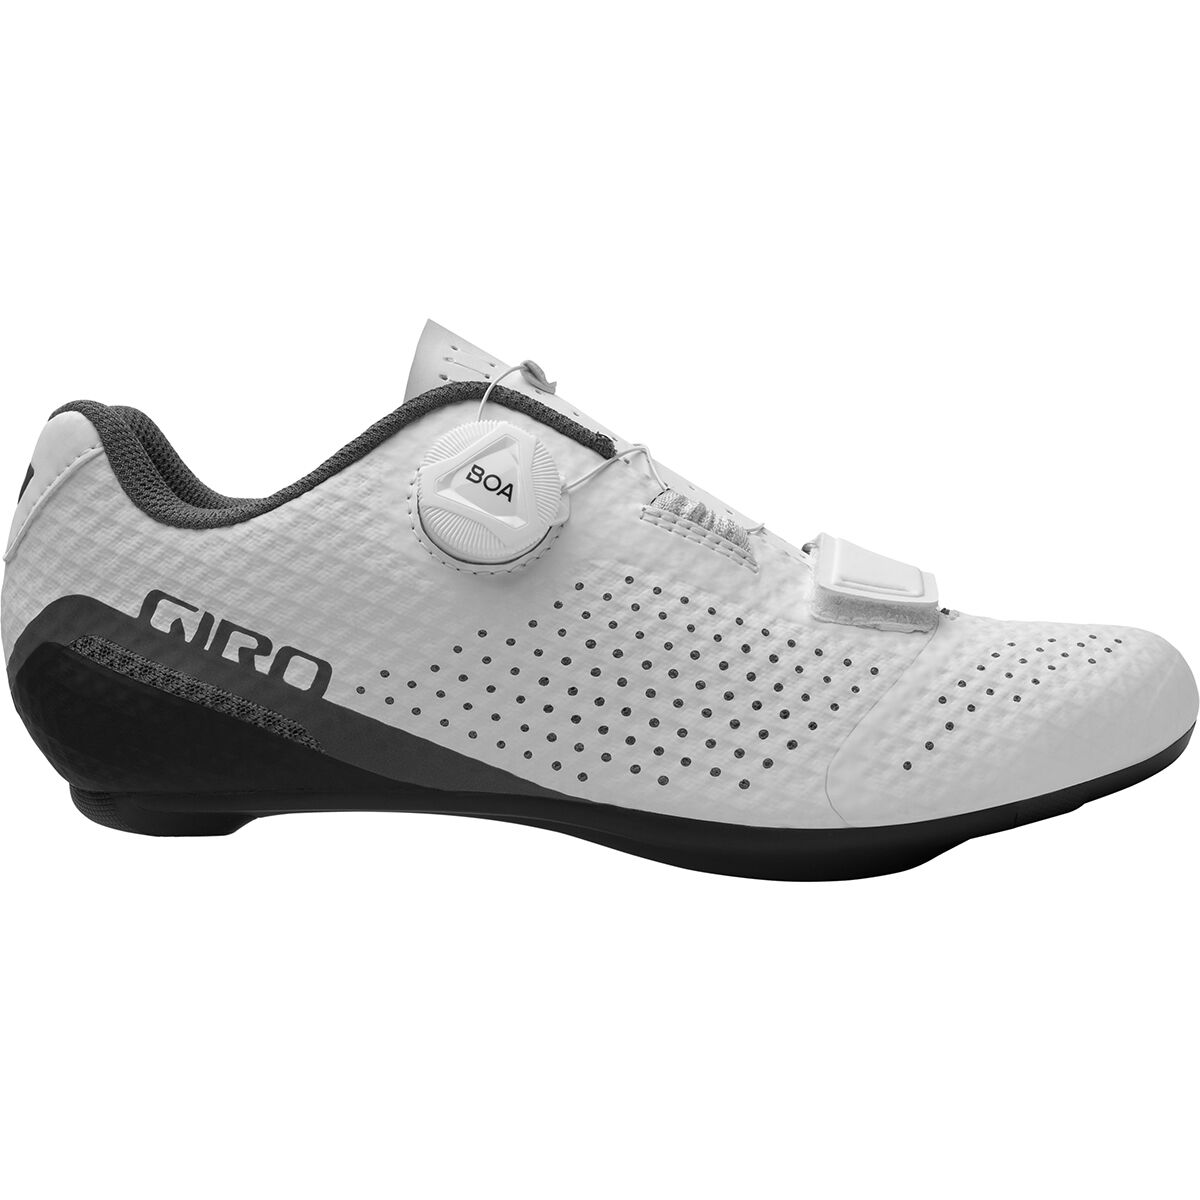 Giro Cadet Cycling Shoe - Women's White, 37.0